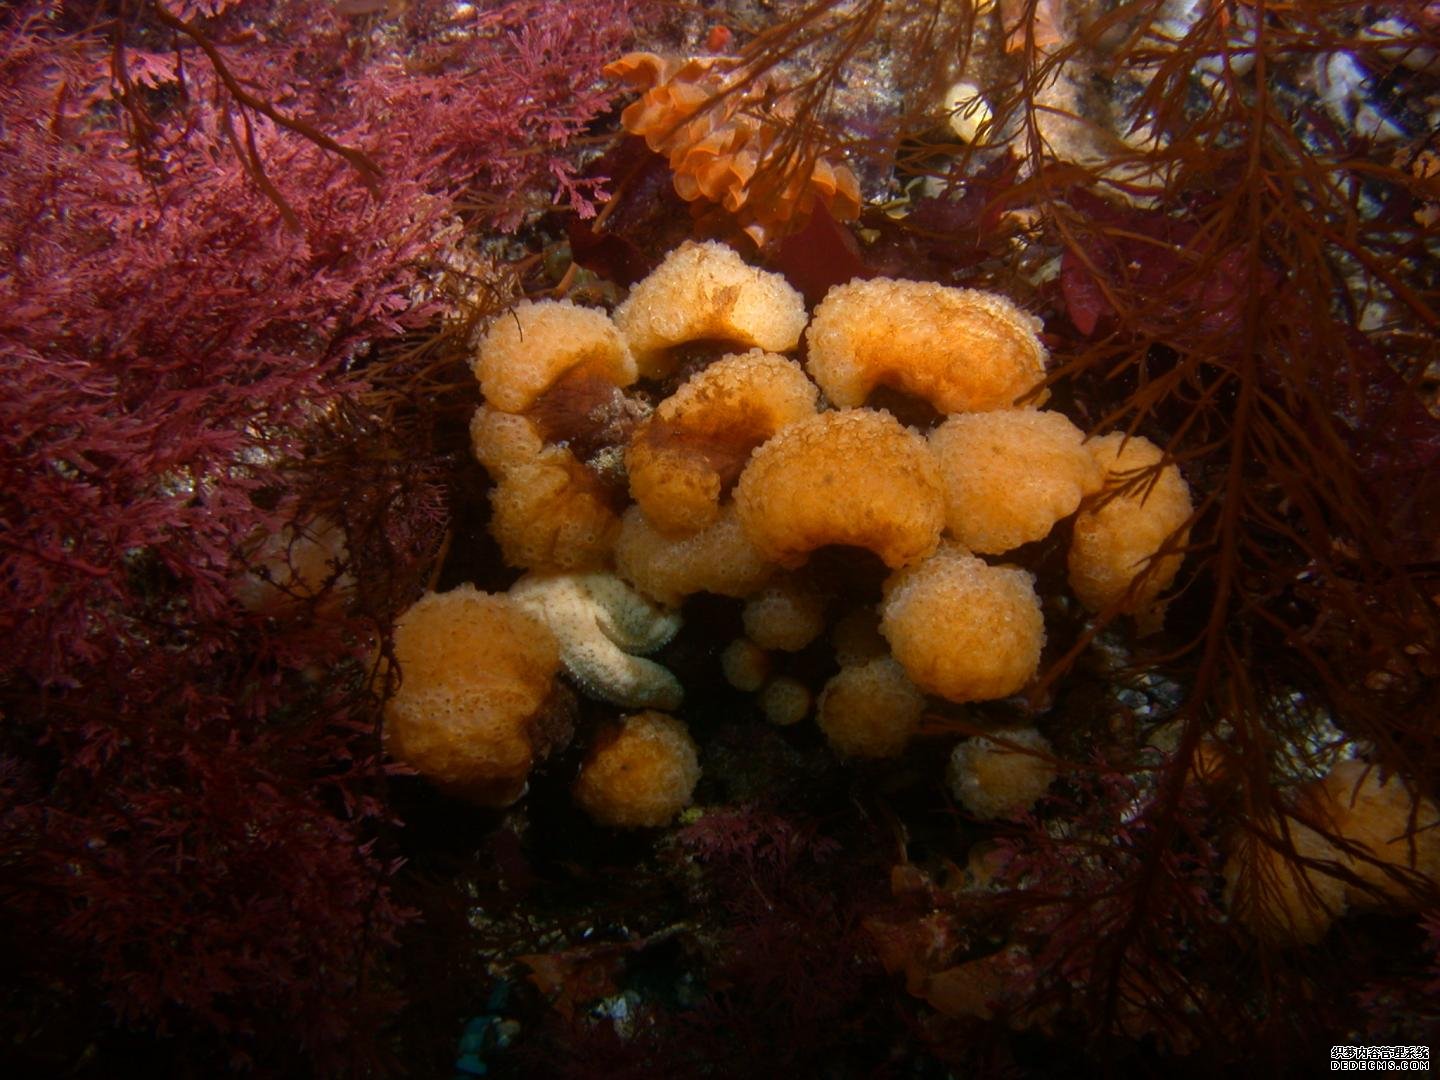 研究揭示了产生抗癌化合物的杏耀起源海洋无脊椎动物微生物组的关键发现